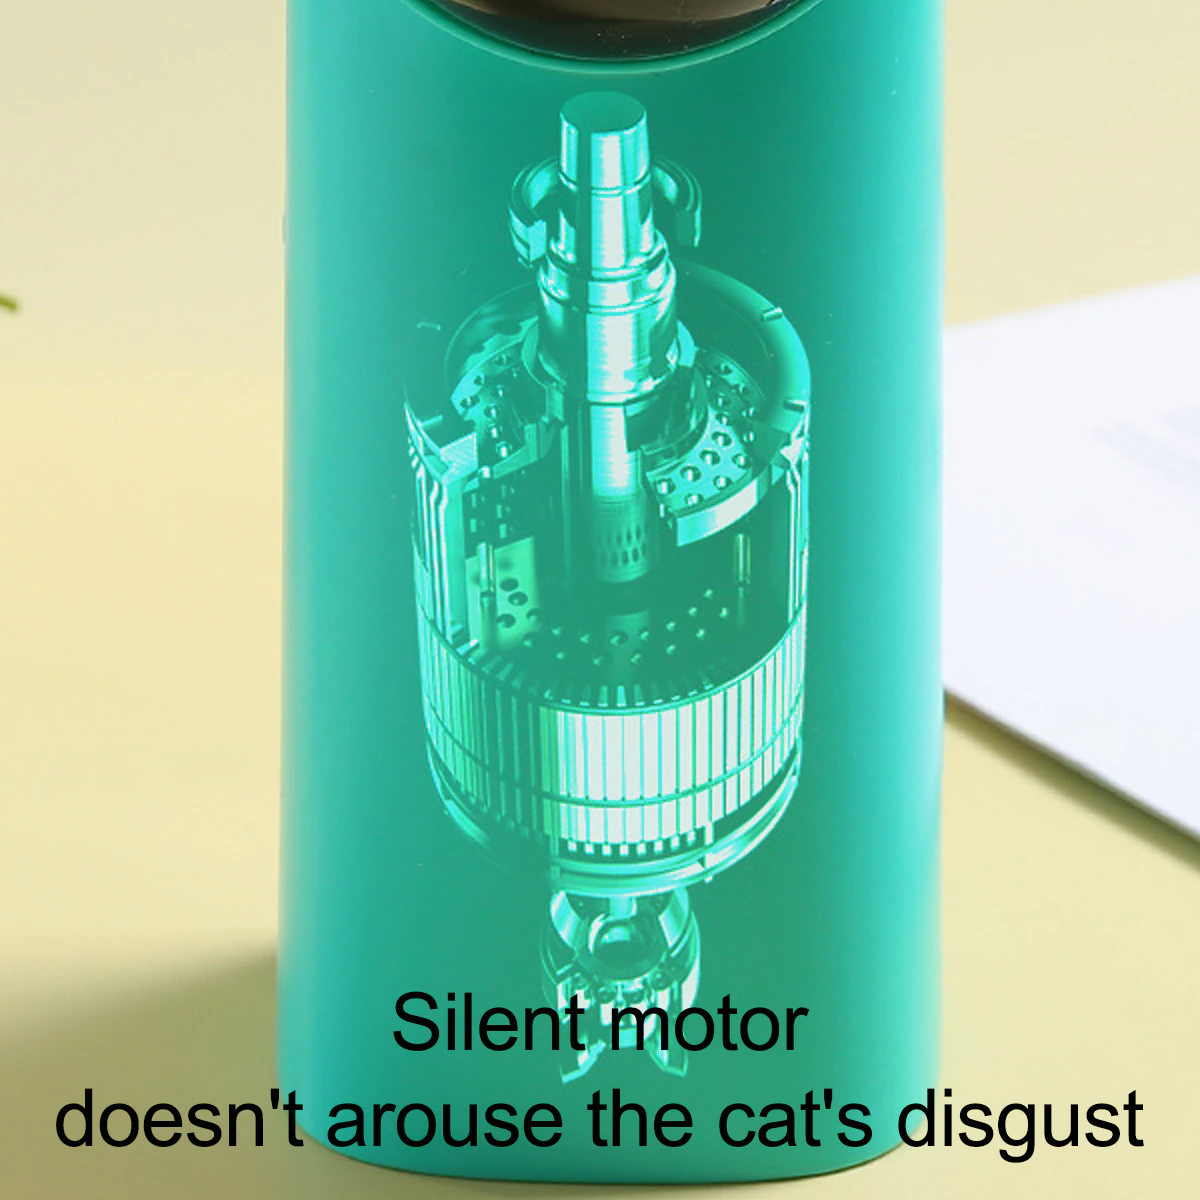 Jucarie interactiva cu laser pentru pisici, verde